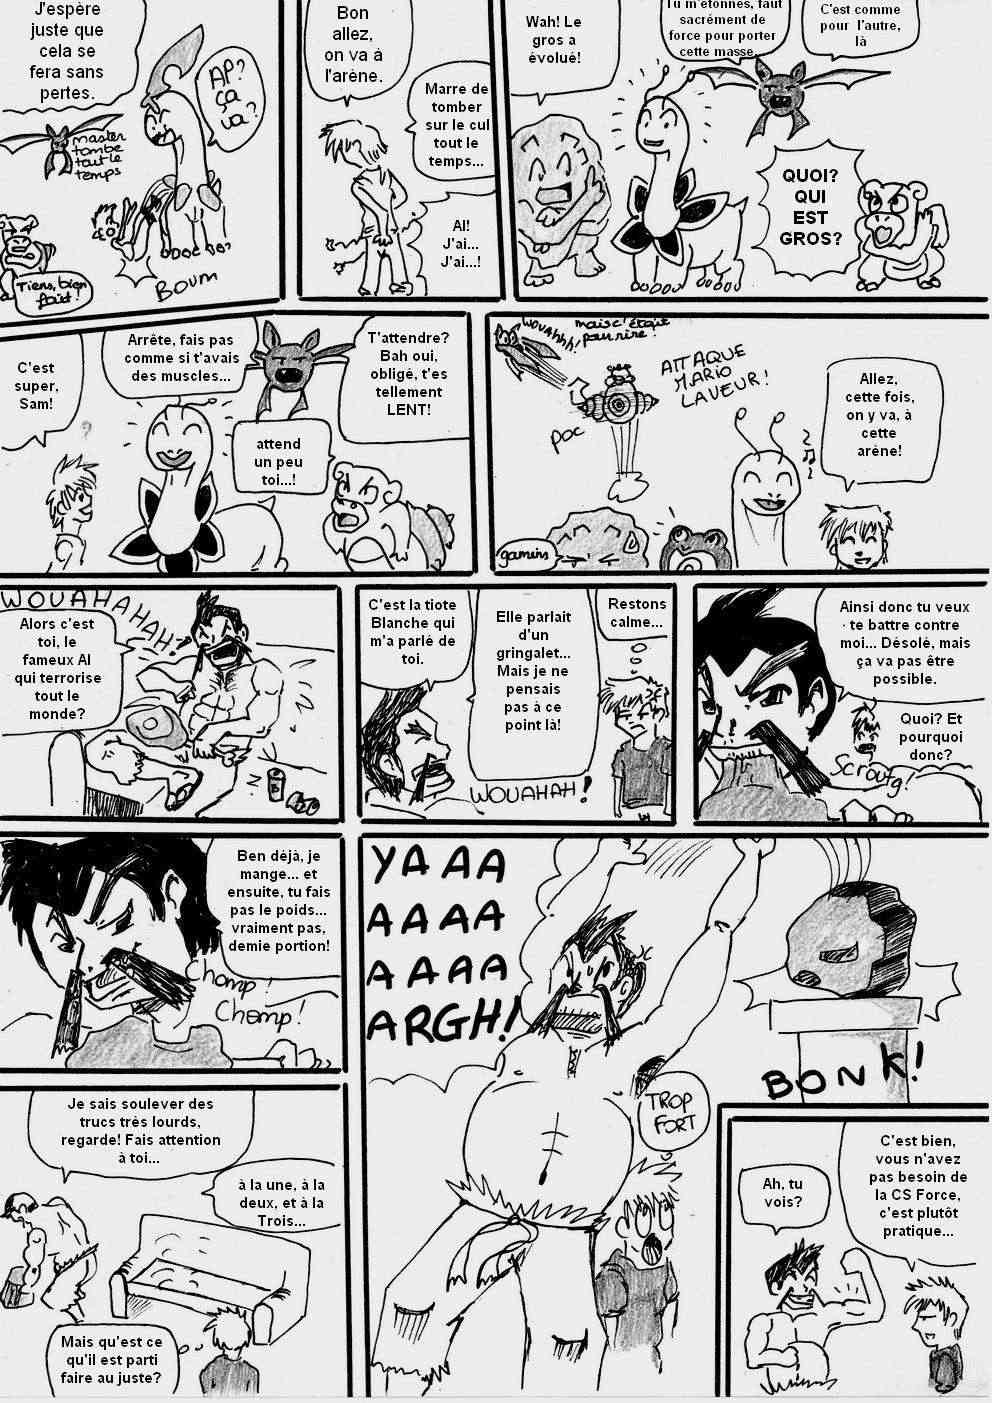 [Argent] shewolf's comic nuz - Page 7 Planch16